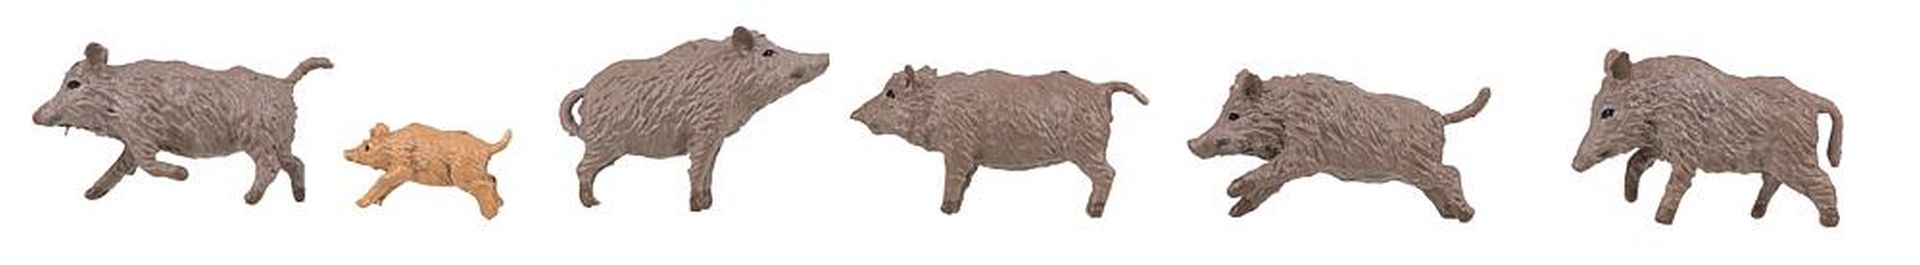 Faller 151925 - Wildschweine